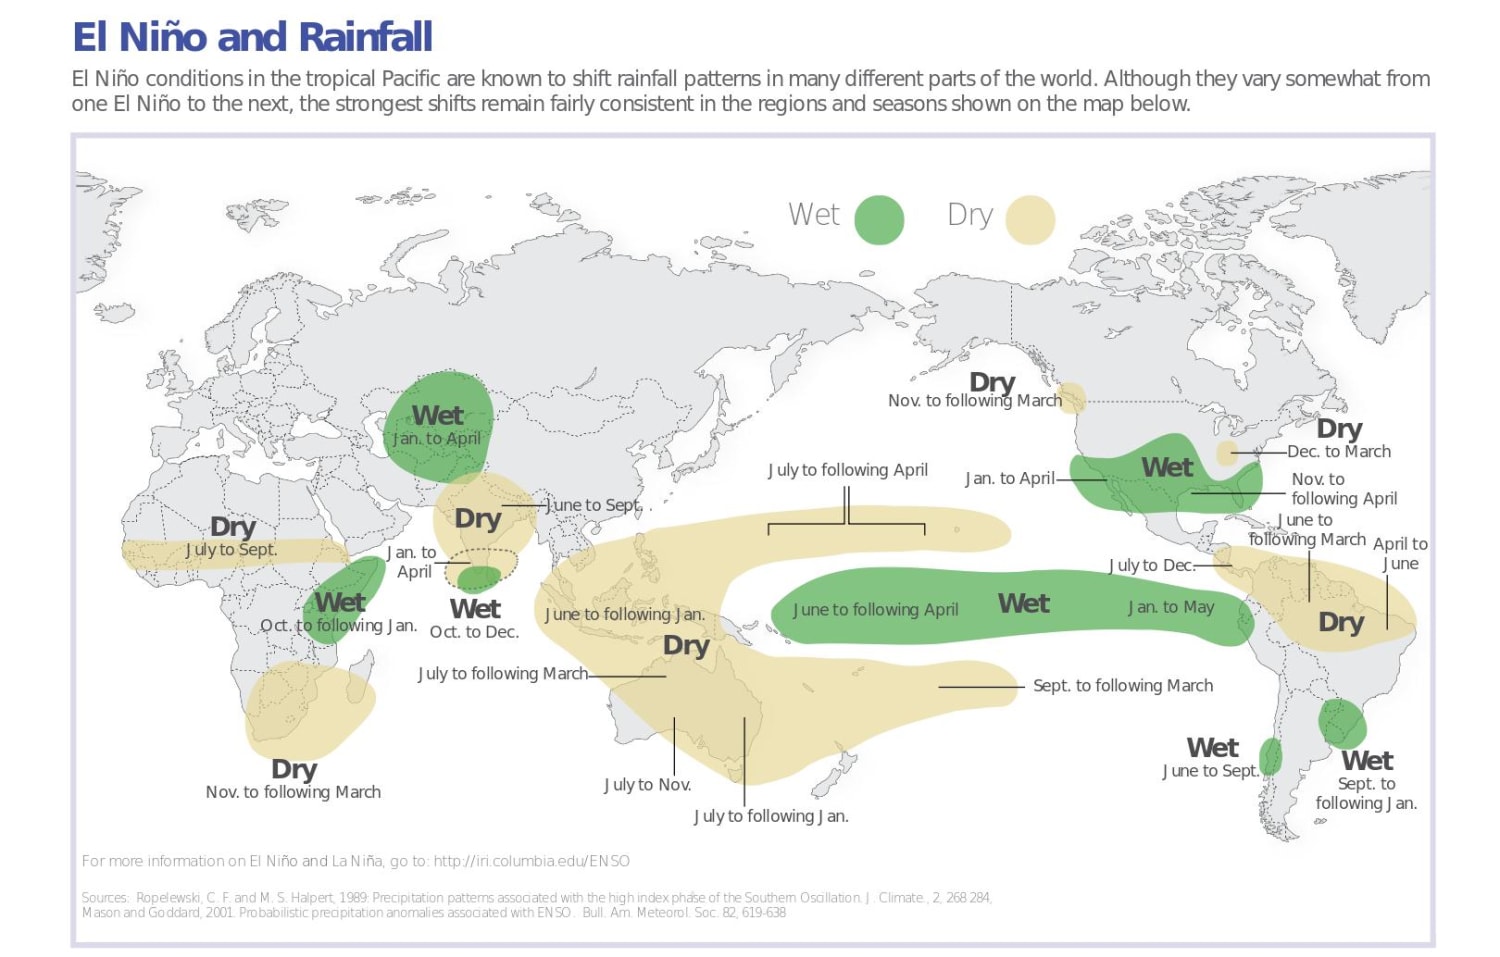 El Nino La Chart